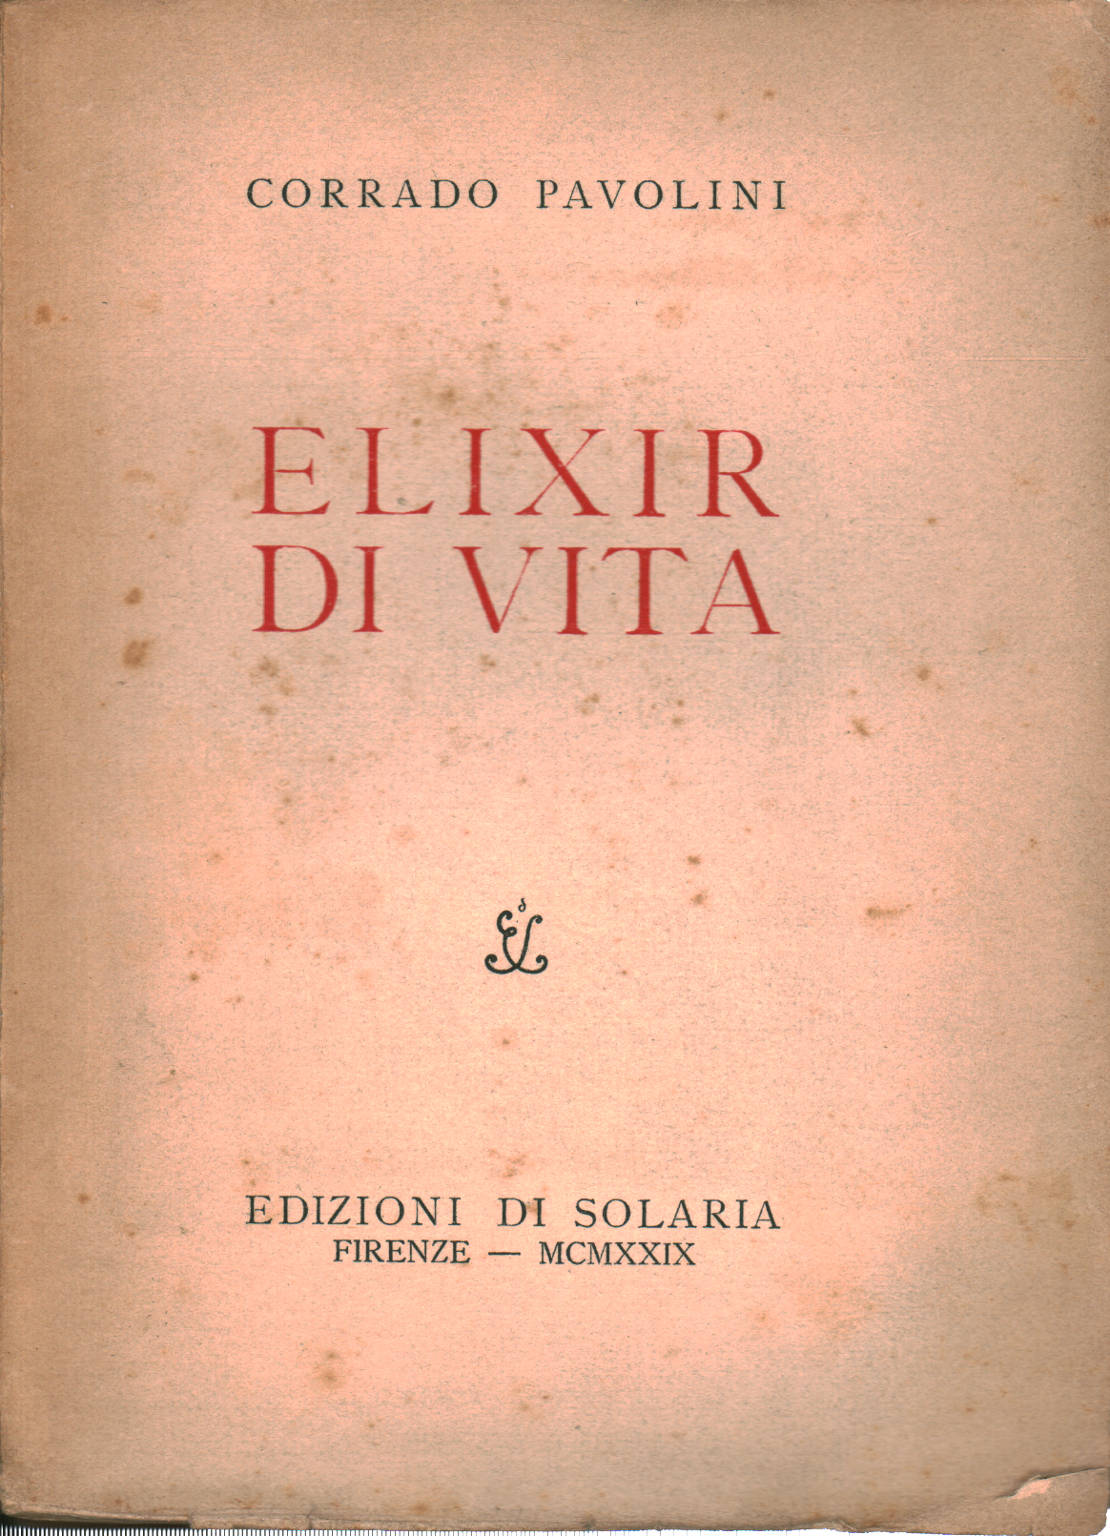 Elixir di vita, Corrado Pavolini